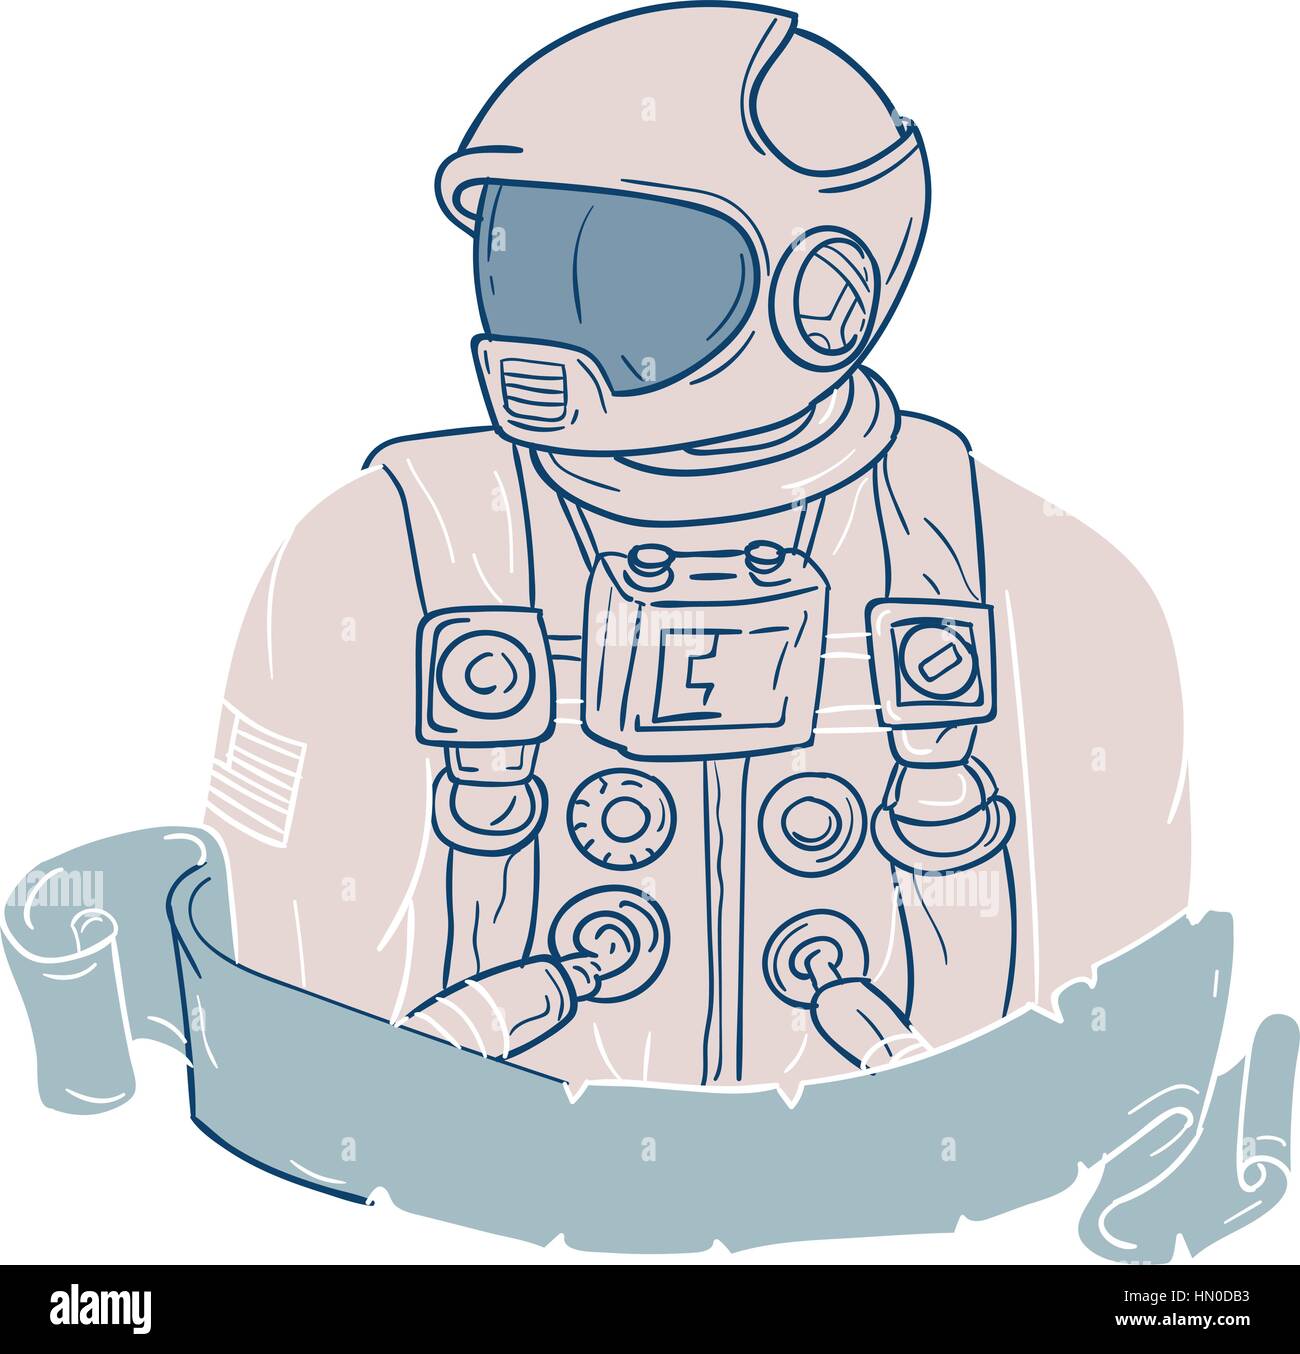 Croquis dessin illustration style de buste d'un astronaute à sur le côté isolé sur fond blanc avec ruban. Illustration de Vecteur